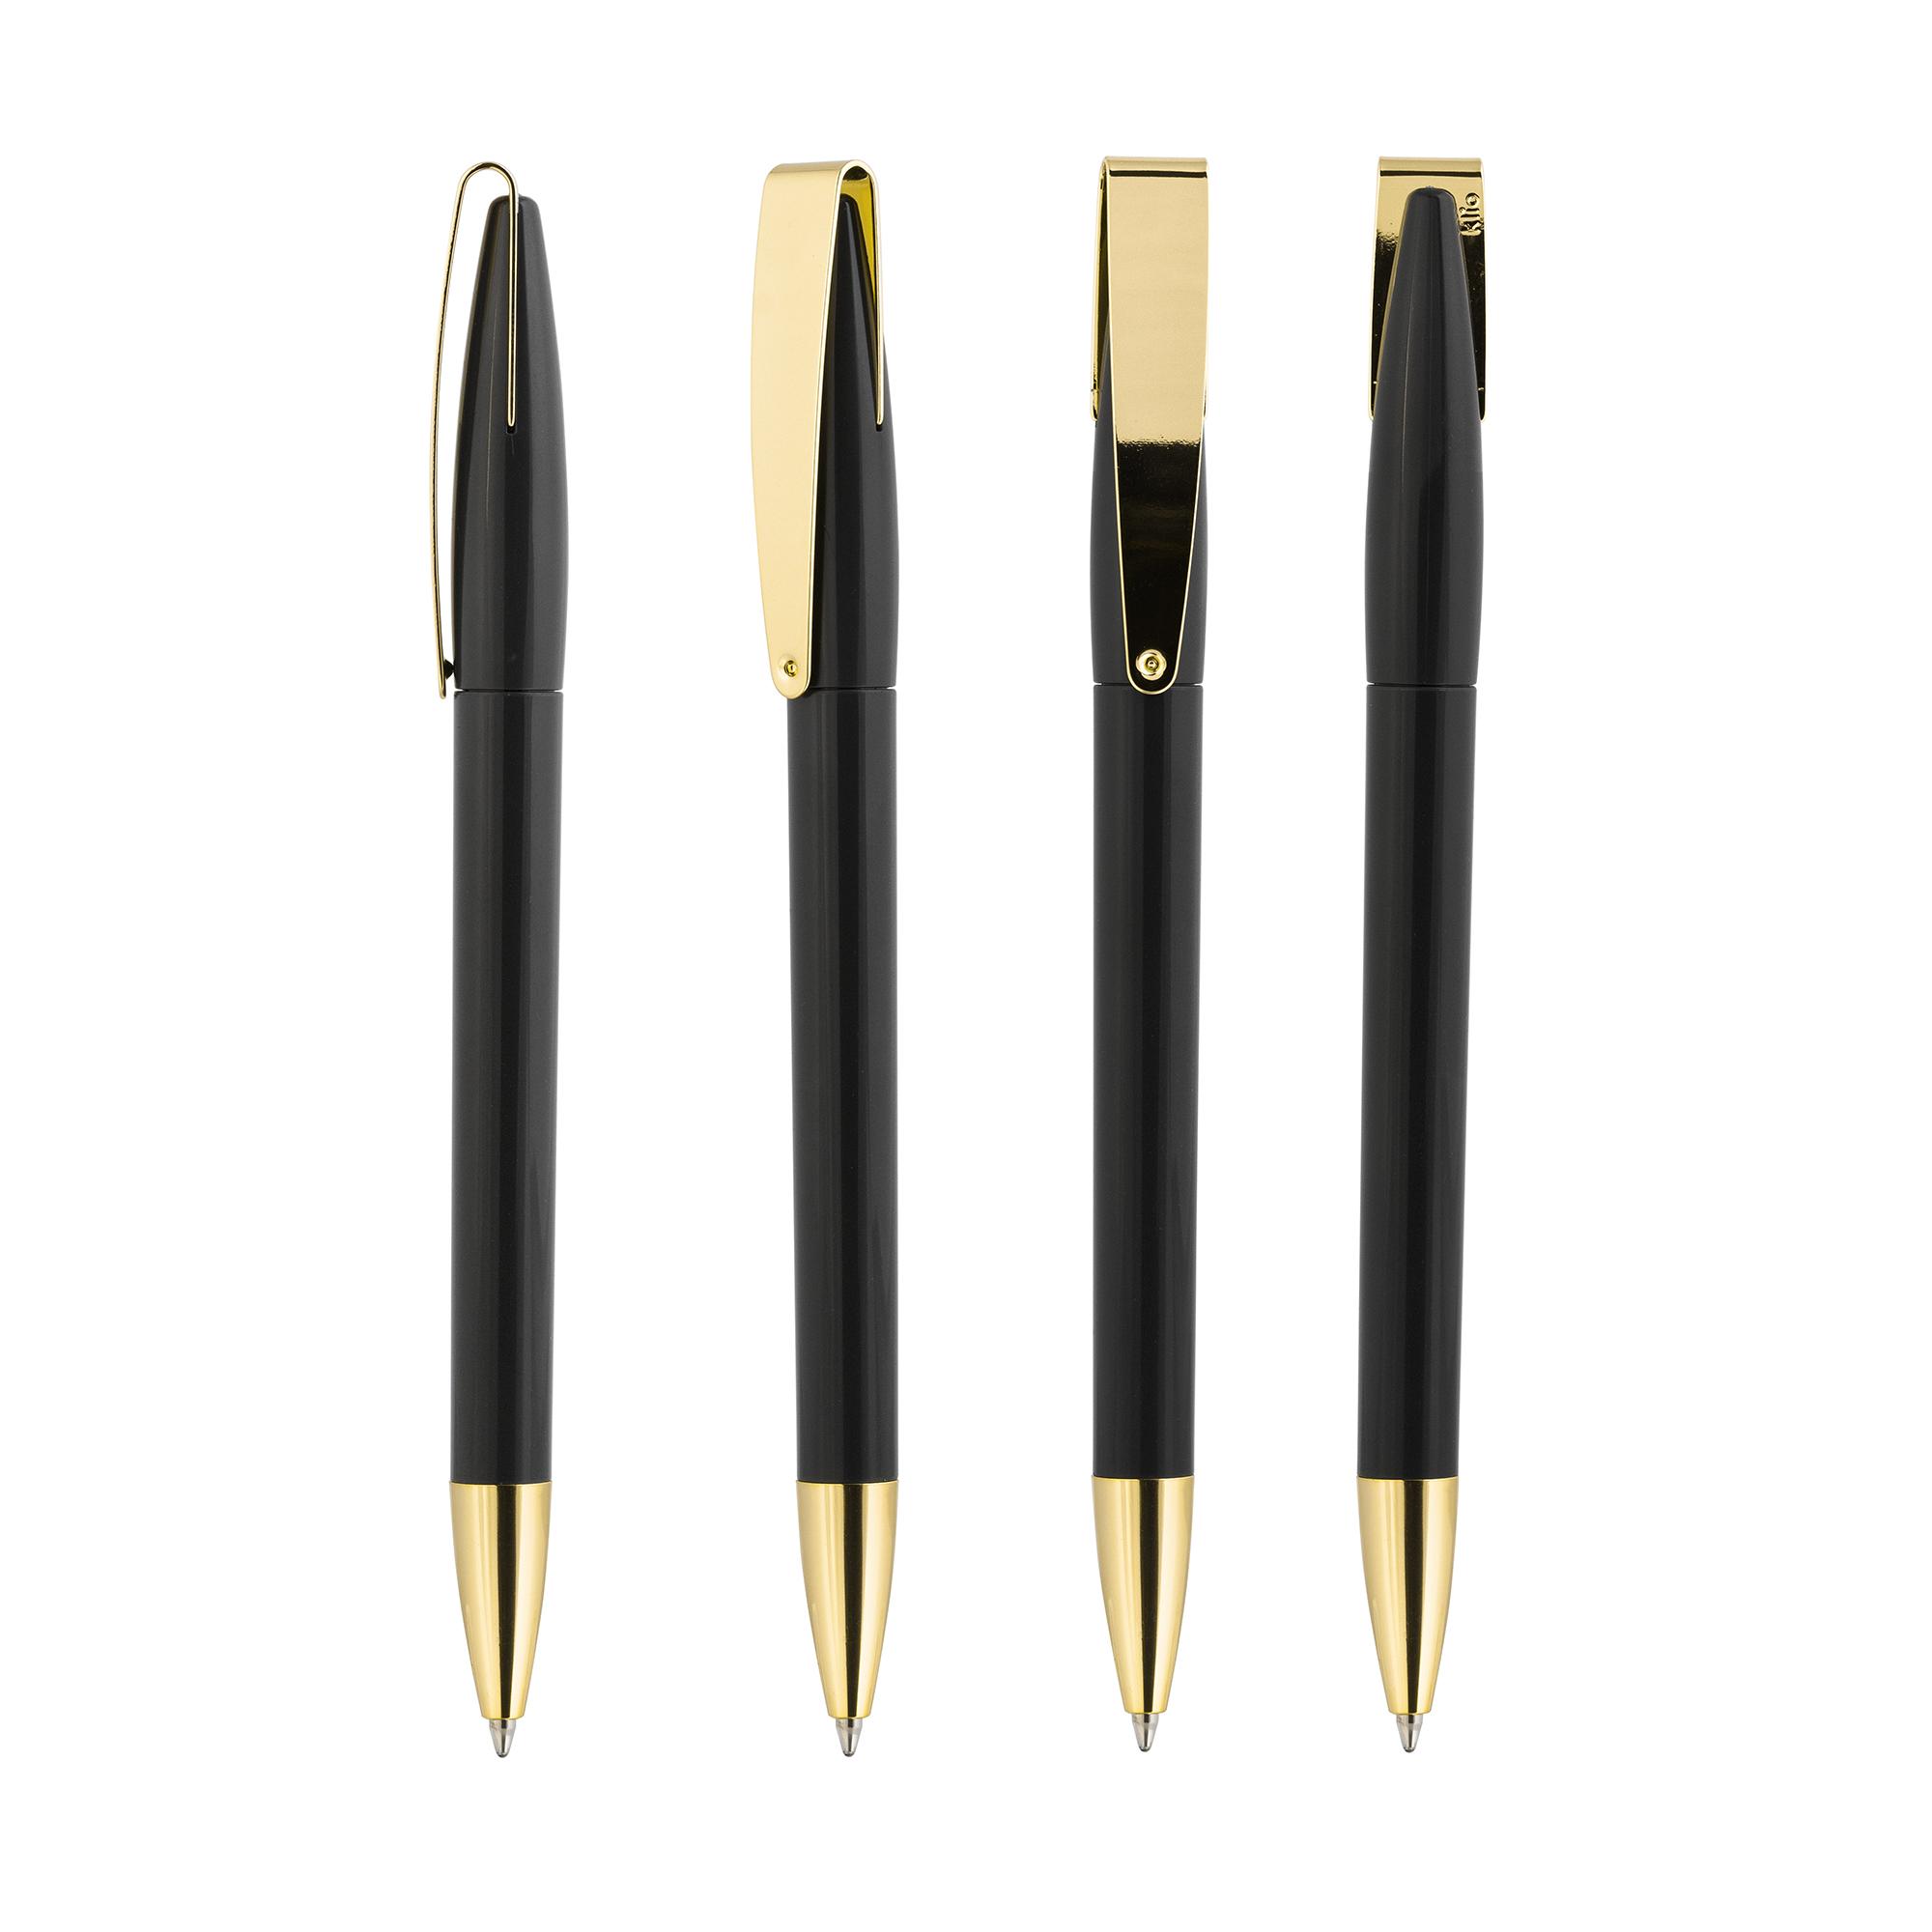 Ручка шариковая COBRA MMG, цвет черный/золотистый, фото 1